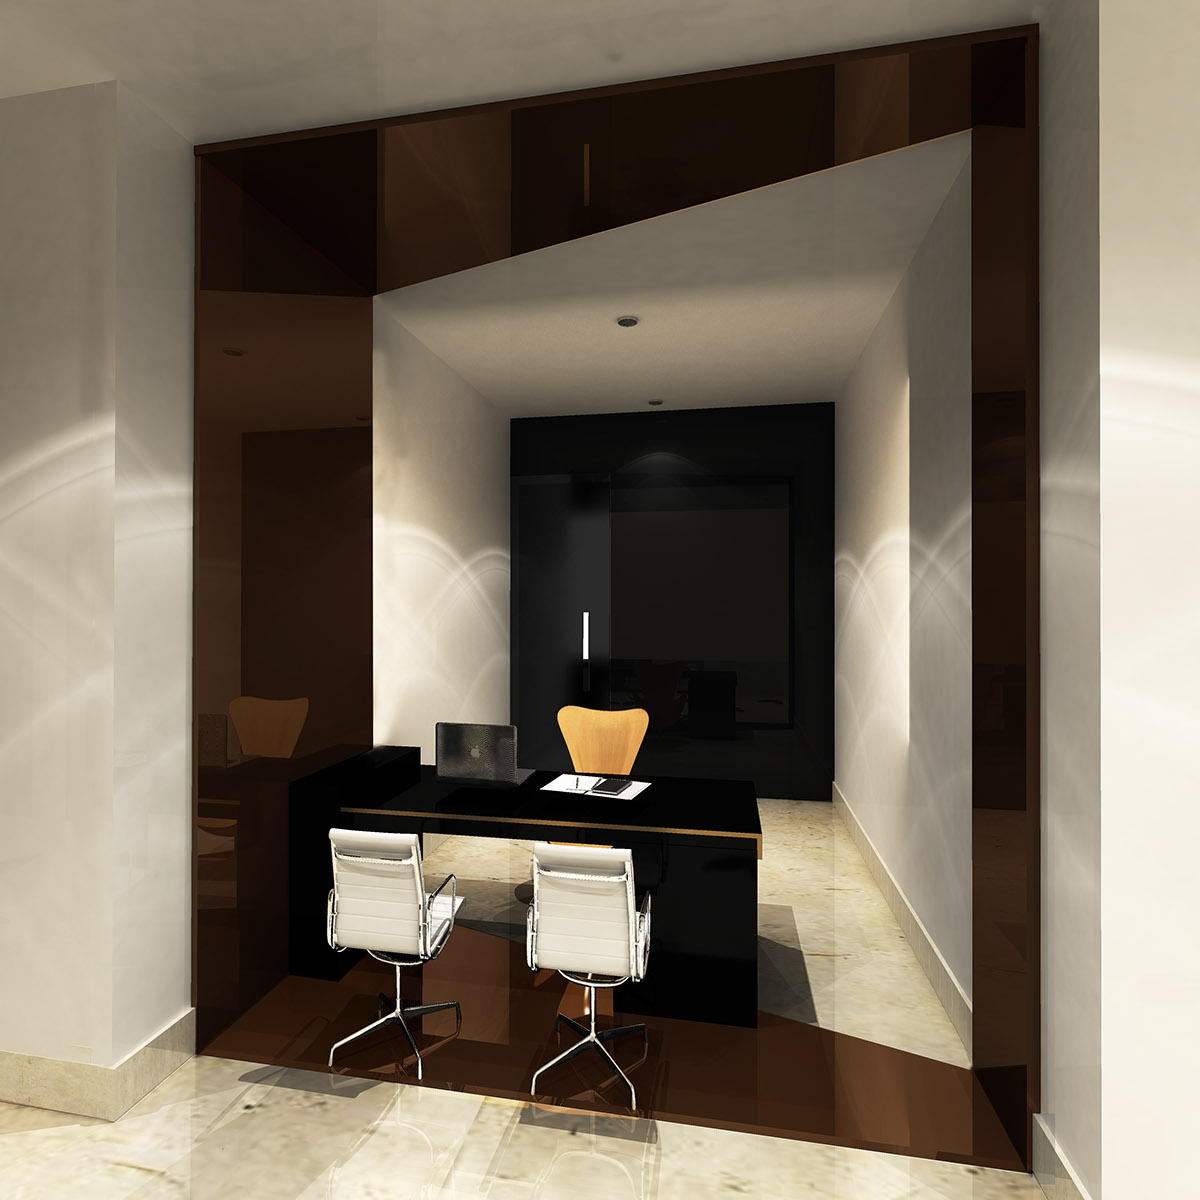 design designer Space  creative Interior concept furniture decorate